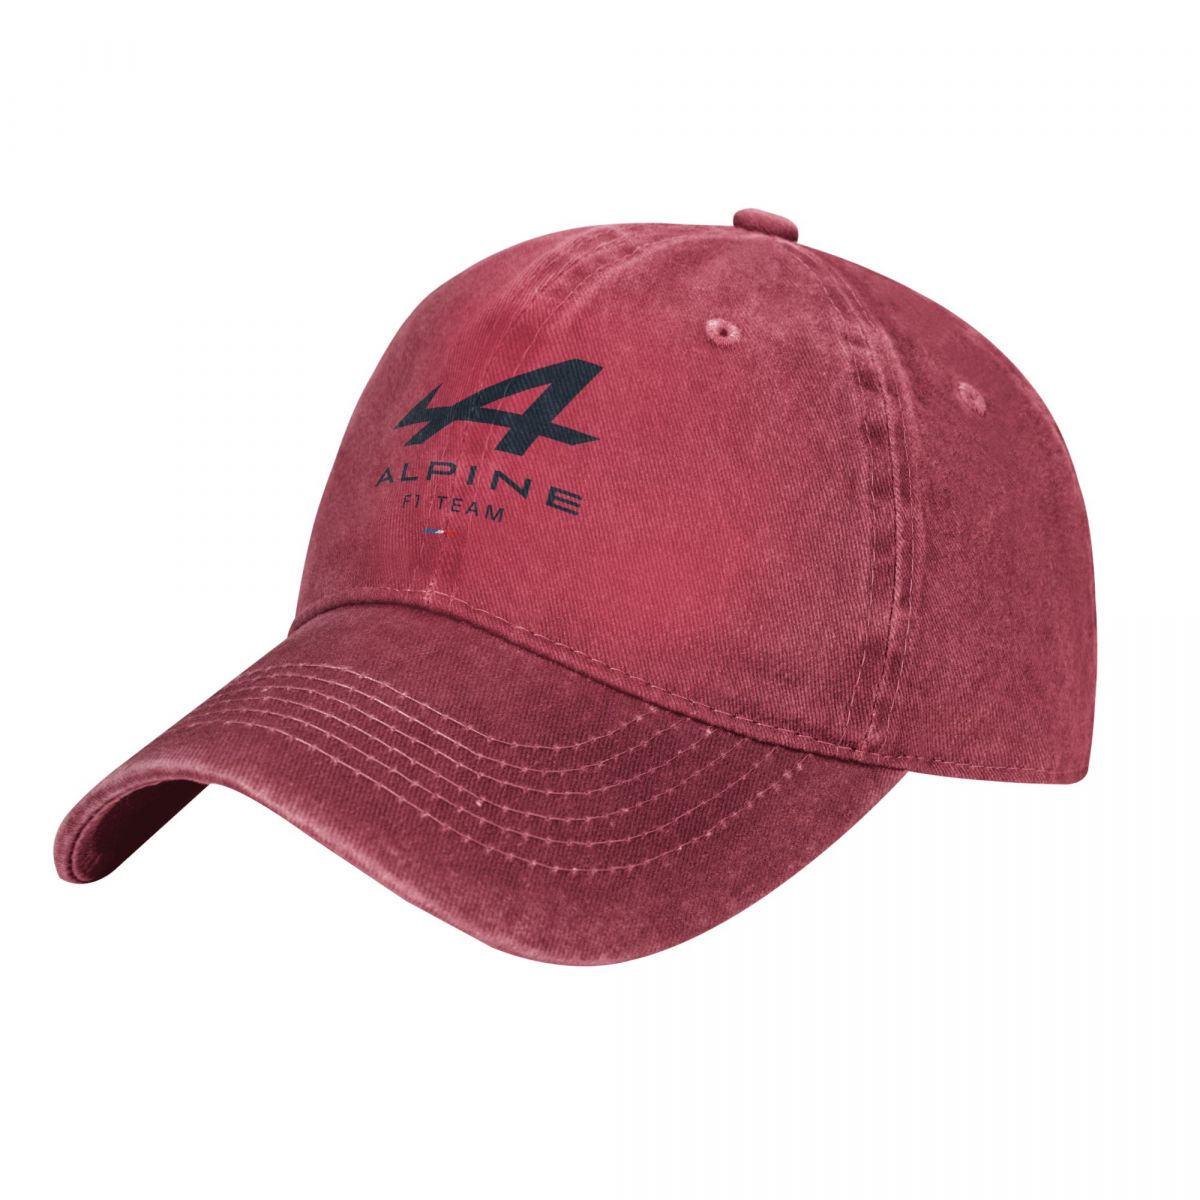 F1 Alpine Team Graphic Cap Unisex Fan Merchandise Gift